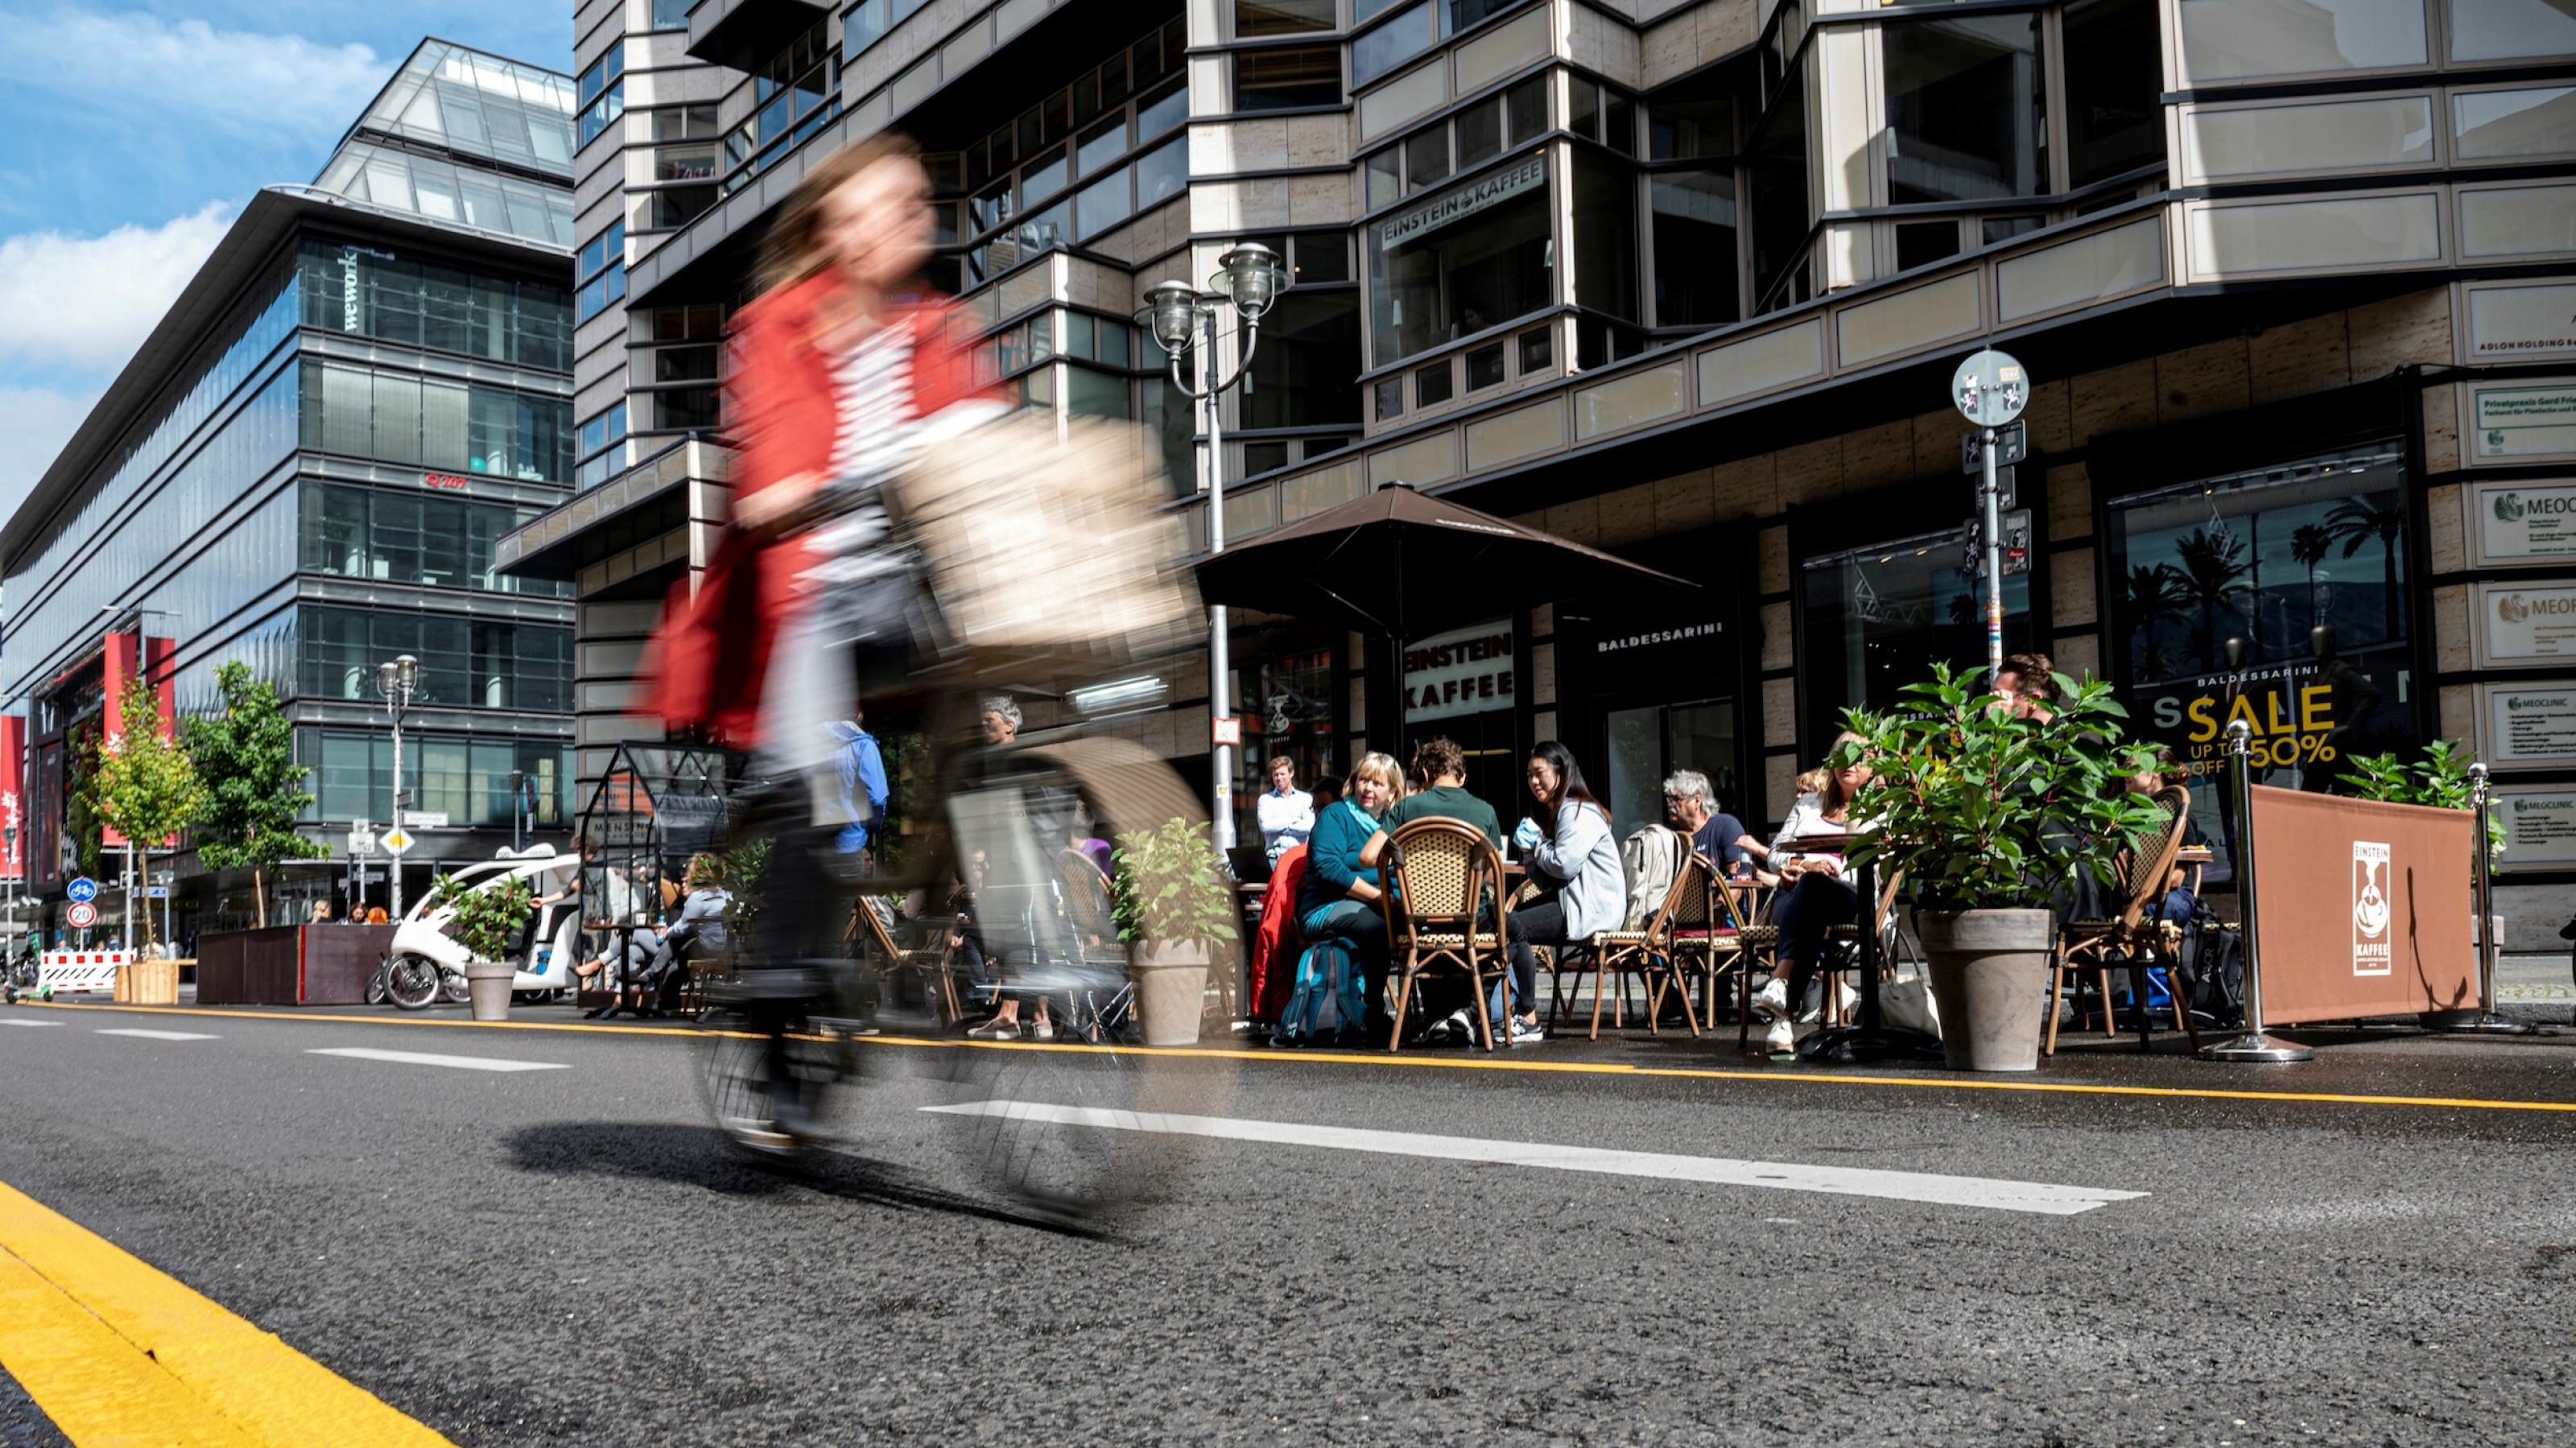 Fahrradfahrer:innen und Passanten
tummeln sich auf dem neuen autofreien Abschnitt der
Friedrichstraße.